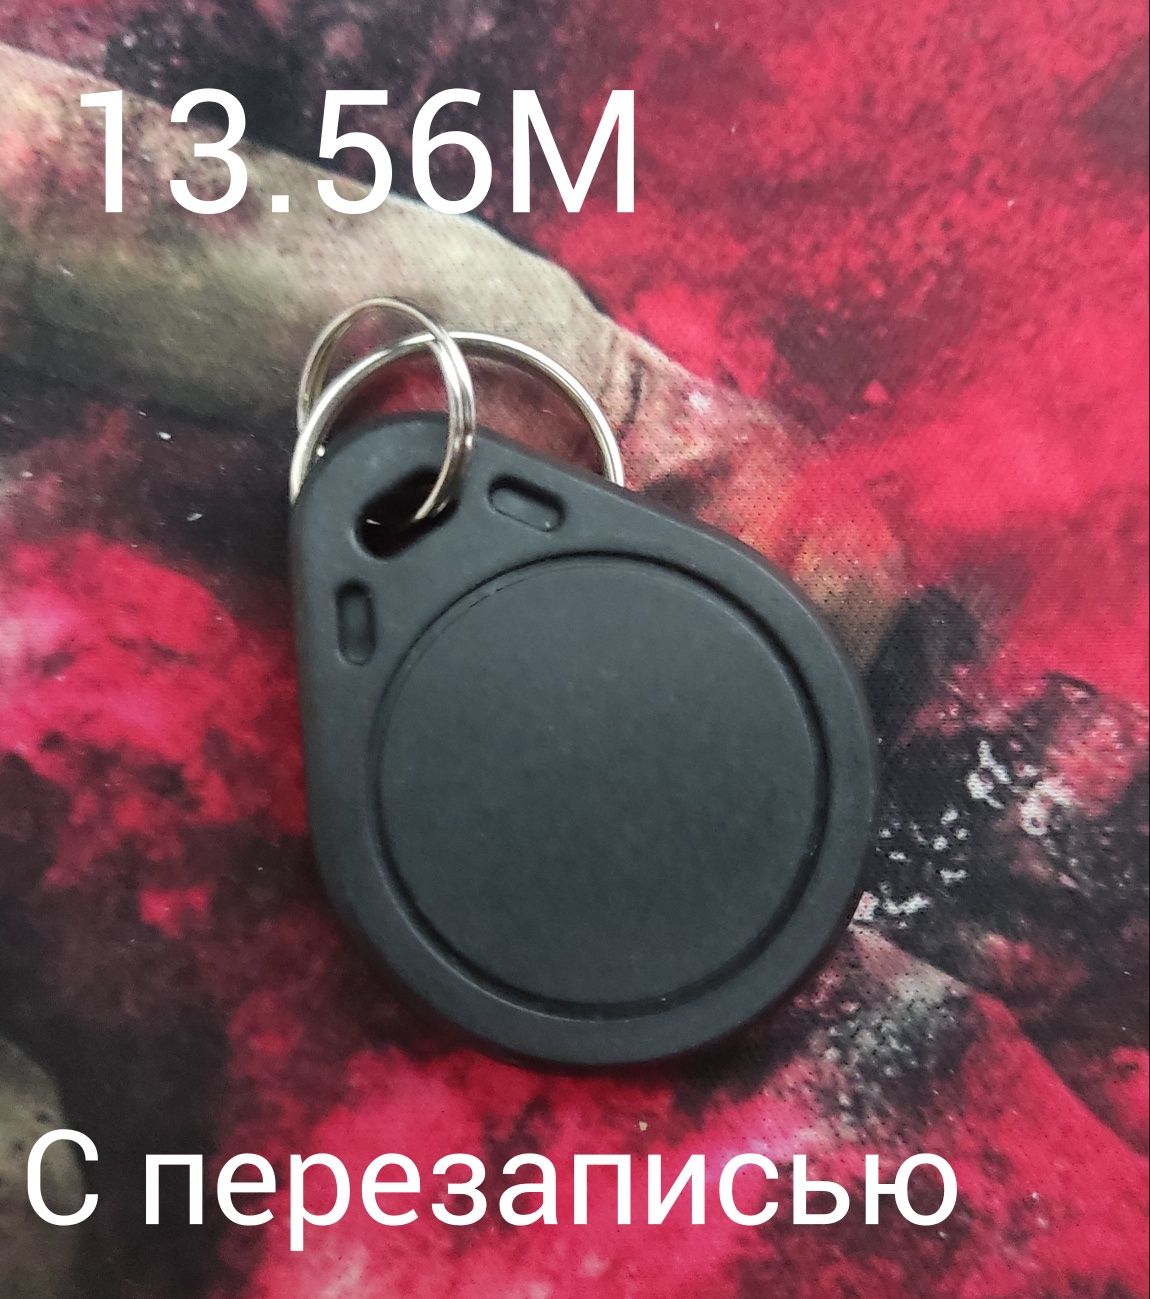 RFID Ключи 13.56М/125К